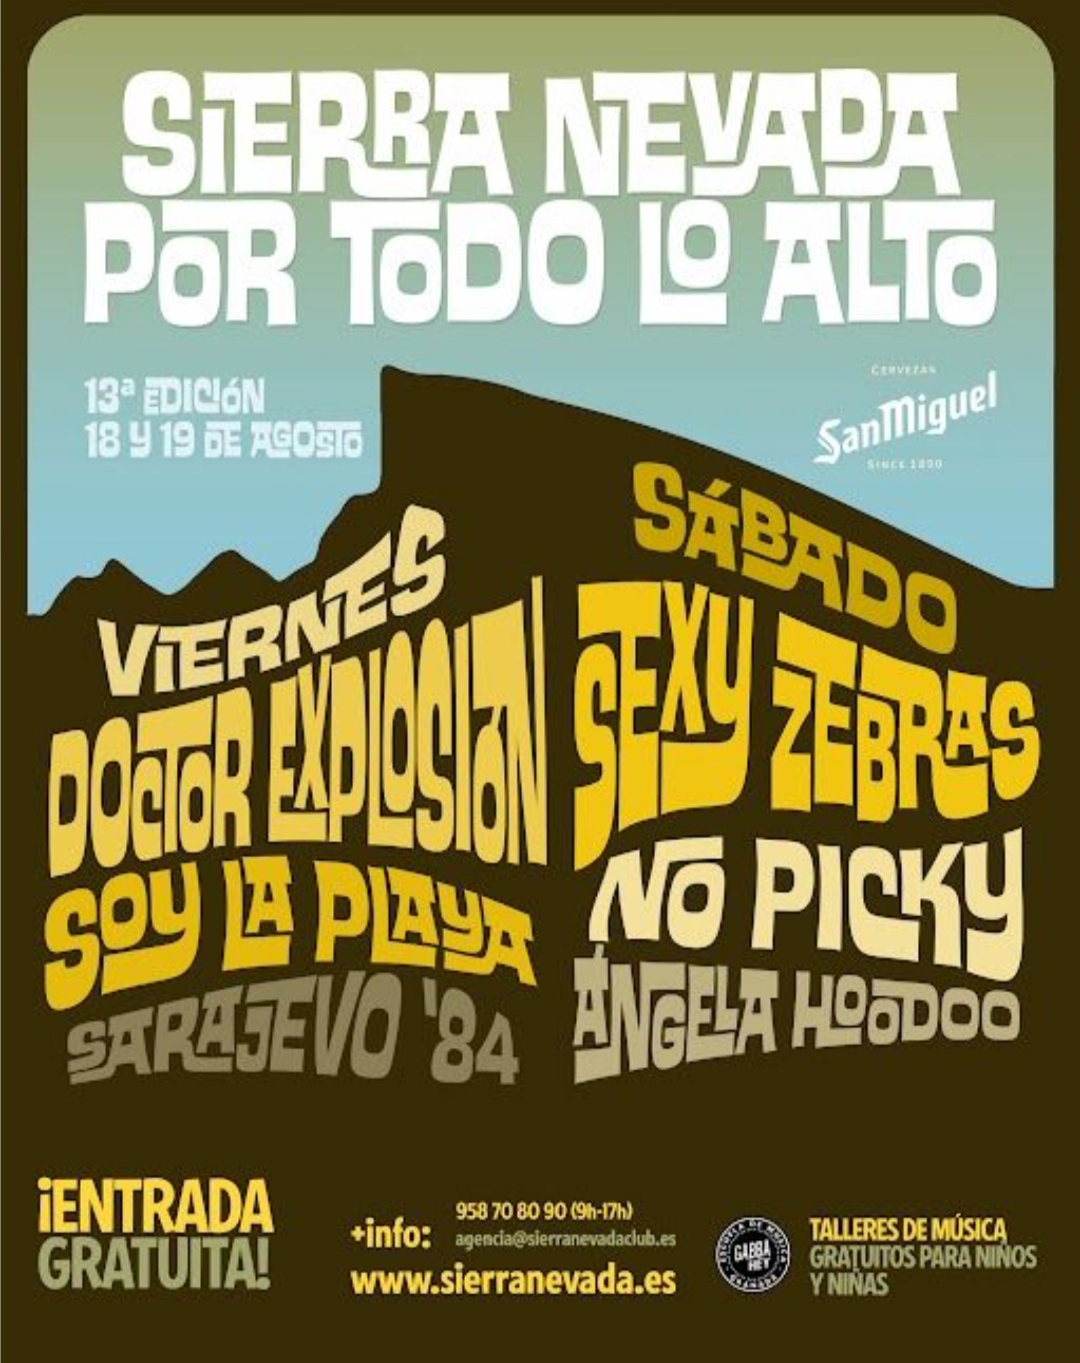 La décimo tercera edición del festival 'Sierra Nevada Por Todo lo Alto' ya tiene cartel completo con el power rock de Sexy Zebras, Soy La Playa y Ángela Hoodoo
